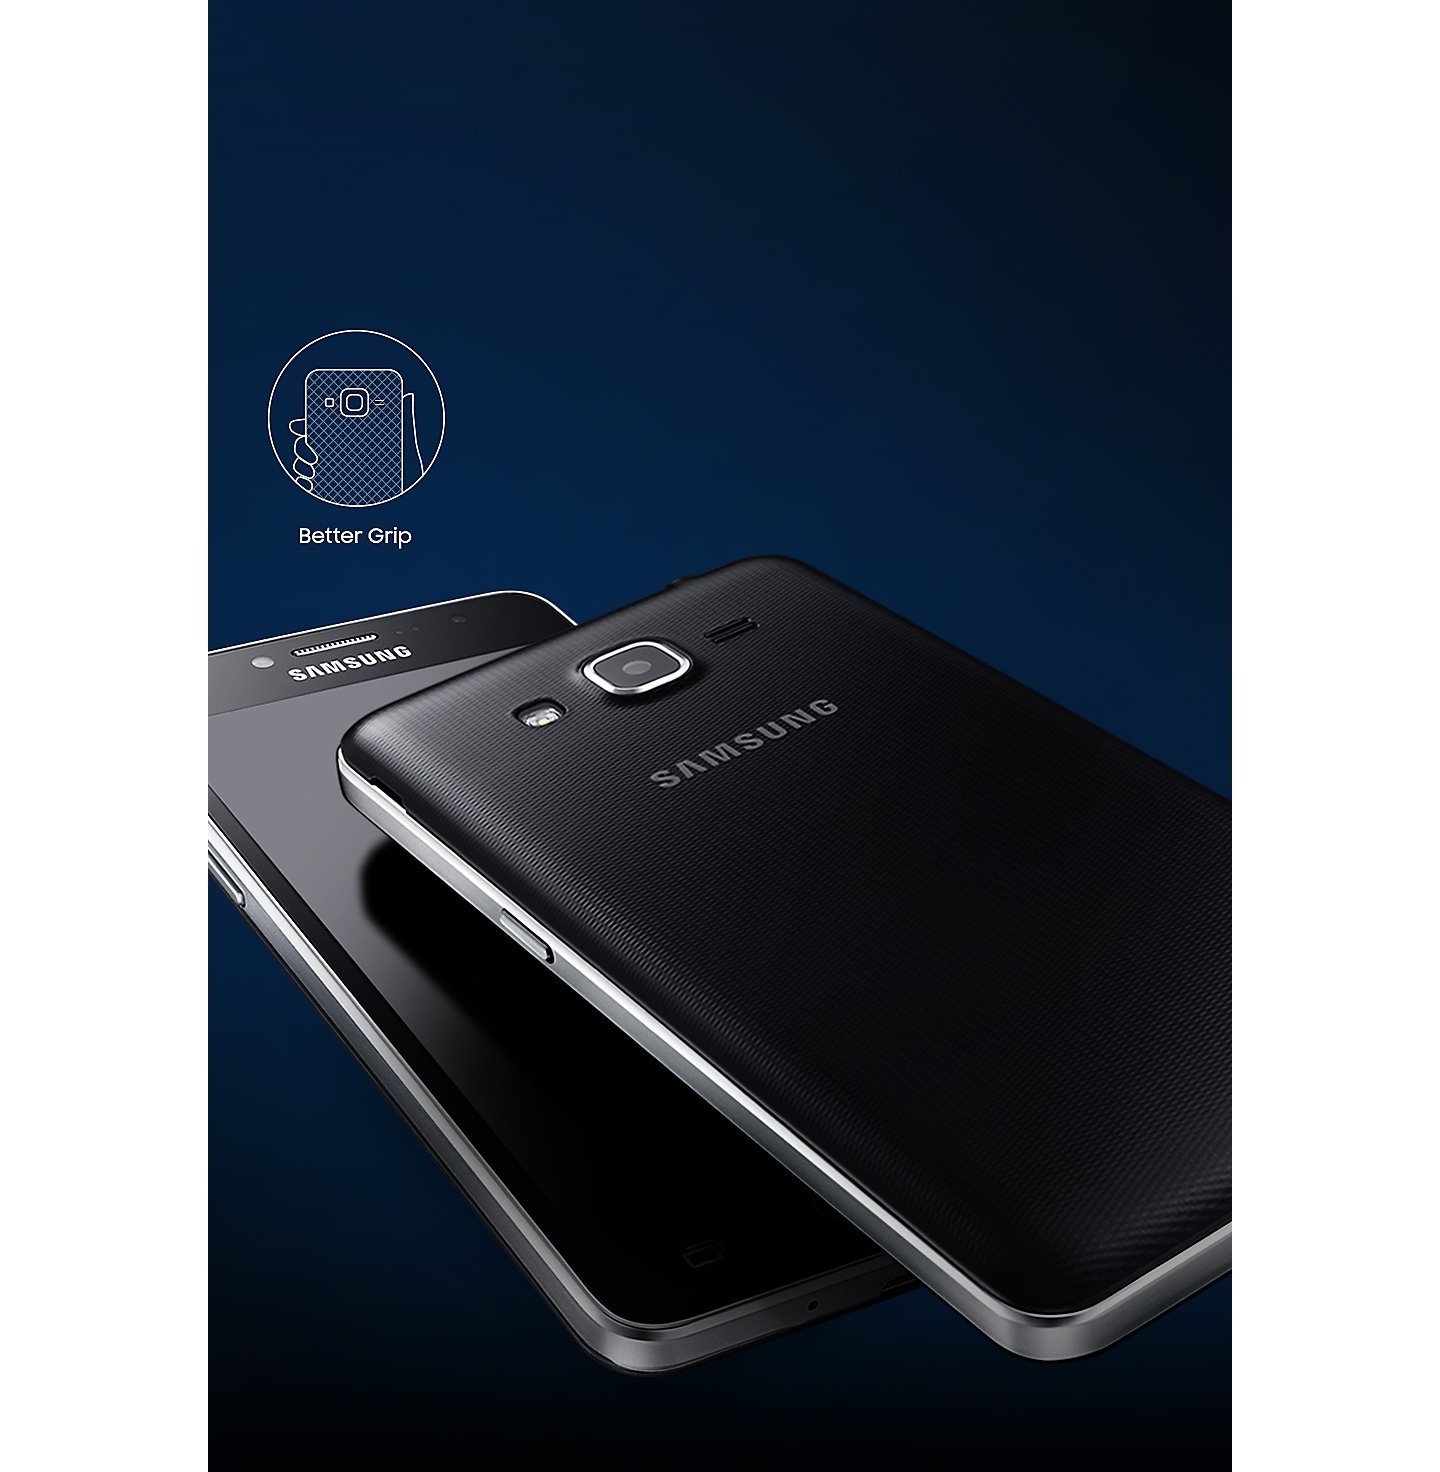 Harga Samsung Galaxy J7 Prime Terbaru Agustus 2020 Dan